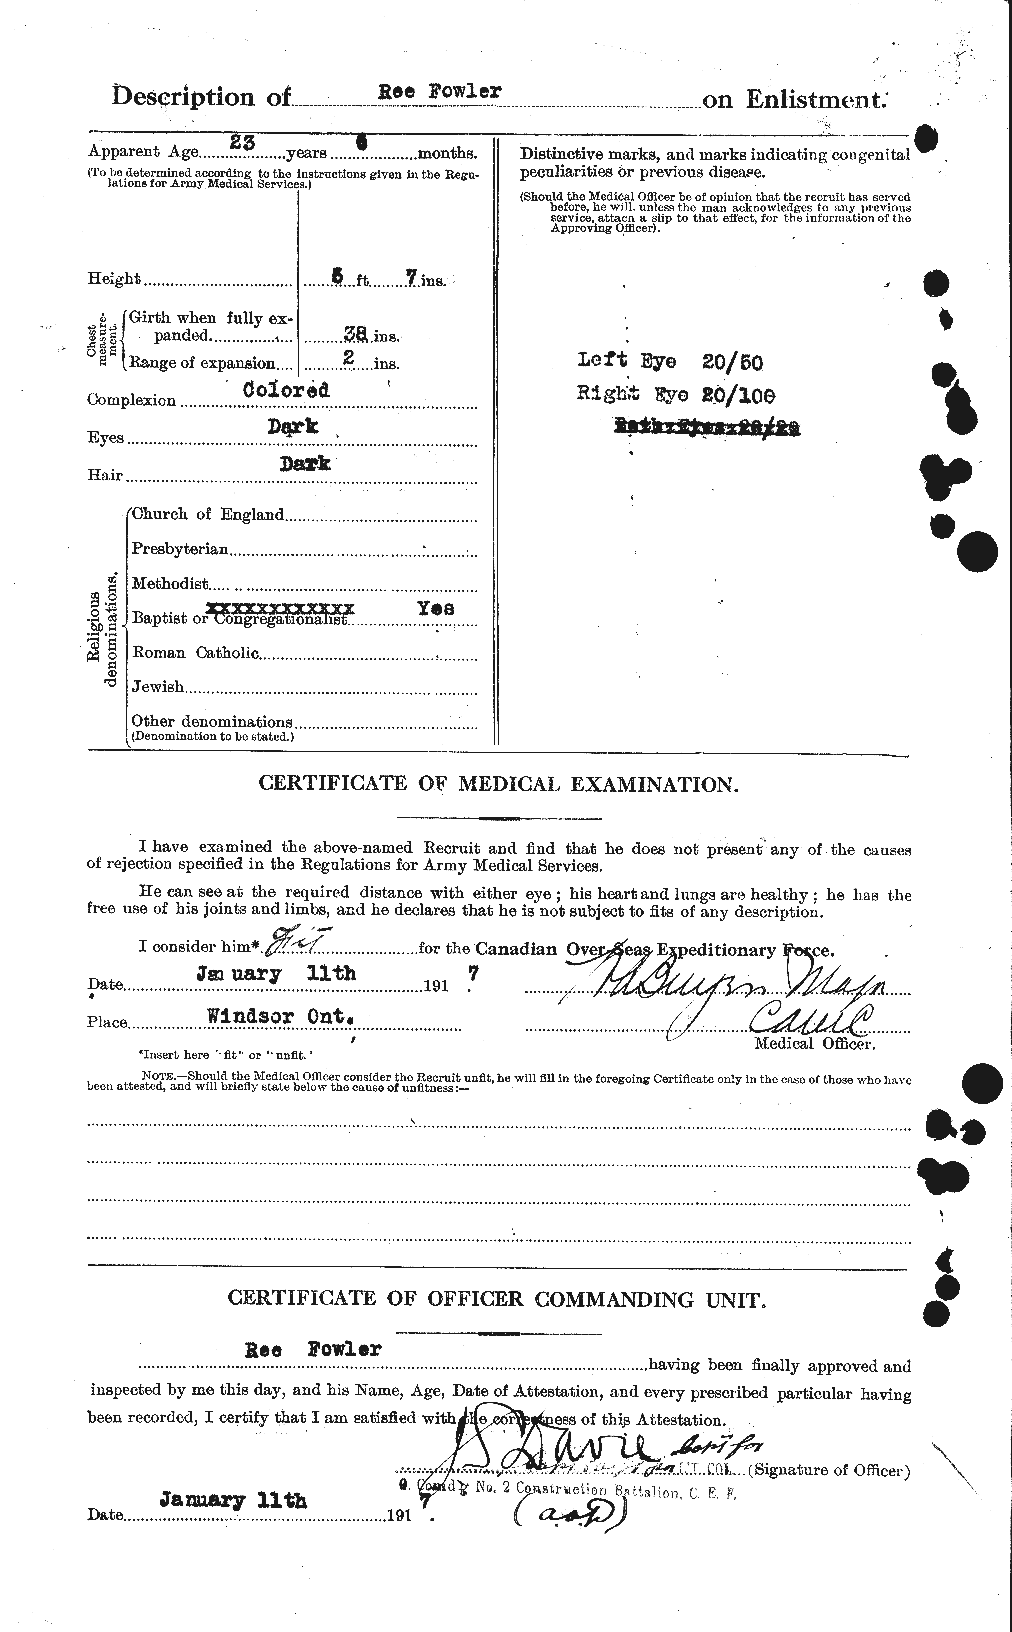 Dossiers du Personnel de la Première Guerre mondiale - CEC 333156b